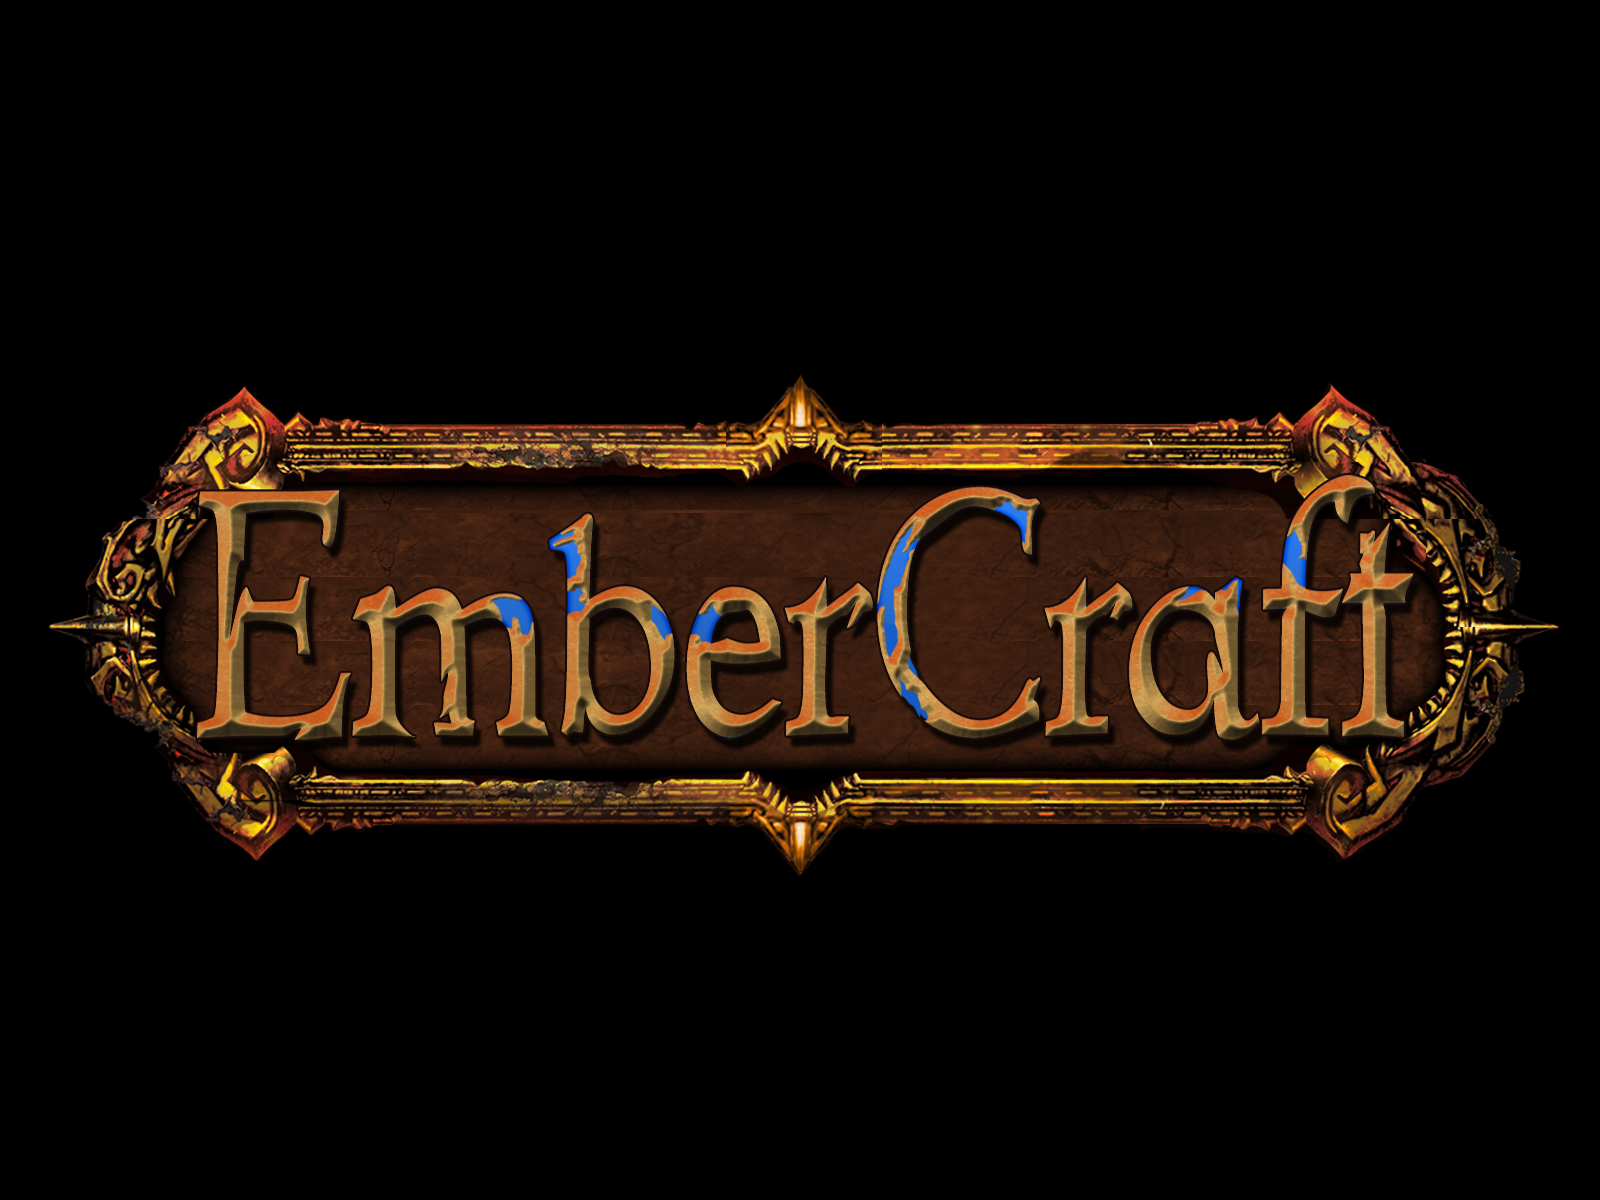 EmberCraft